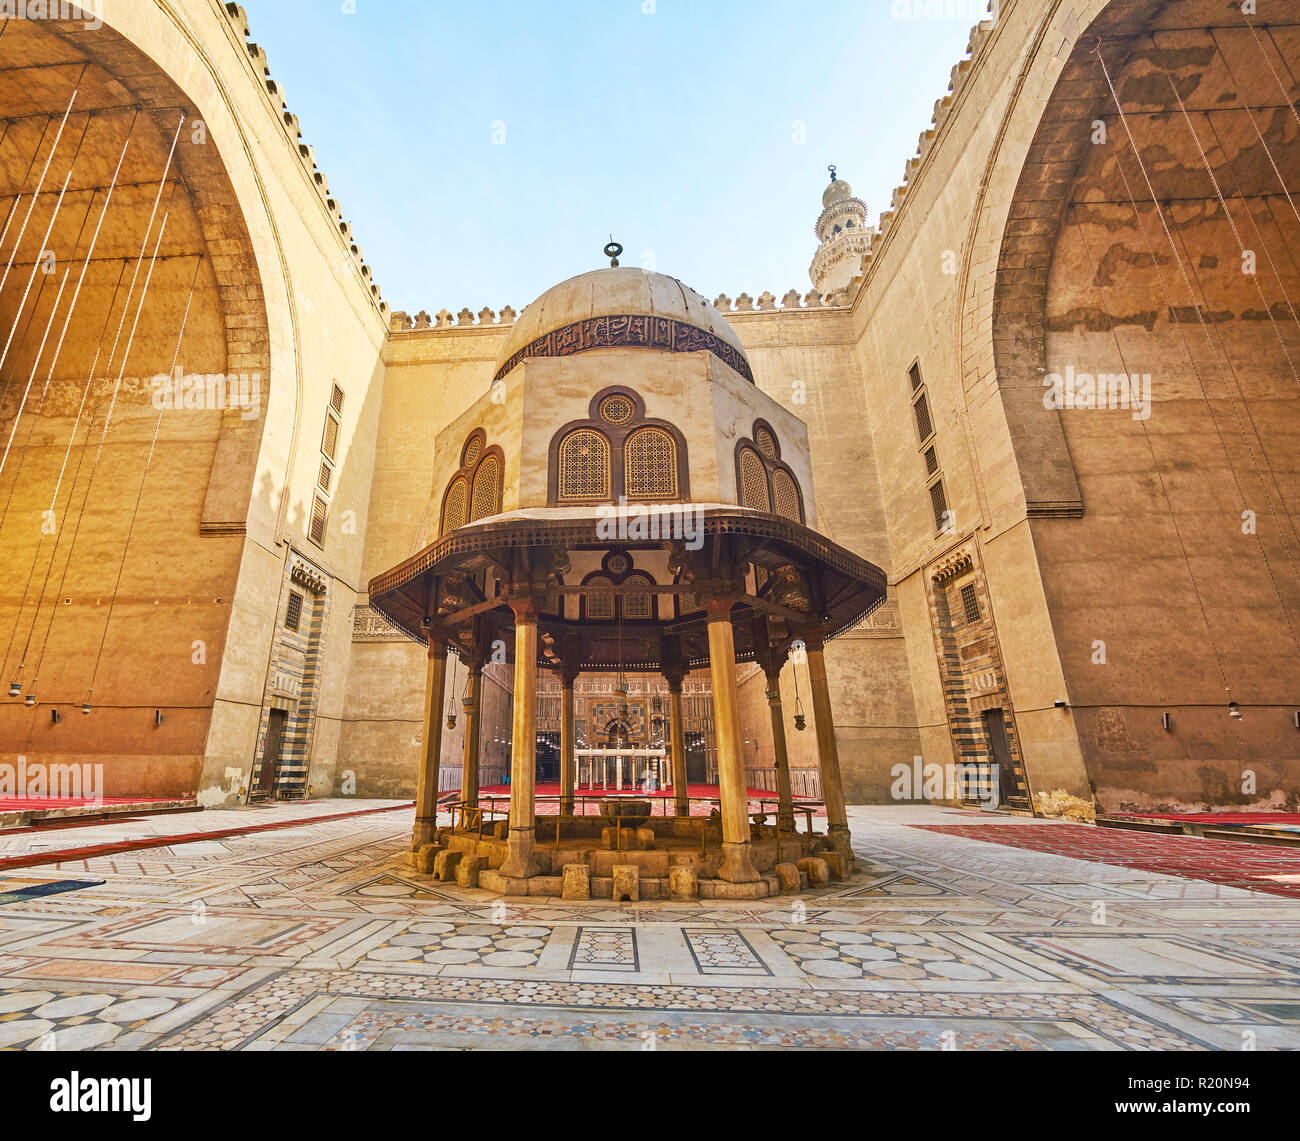 Le CAIRE, ÉGYPTE - Le 21 décembre 2017 : la cour du Sultan Hassan Mosque-Madrasa avec ornés des dalles en pierre au sol et la fontaine d'ablution sculpté Banque D'Images